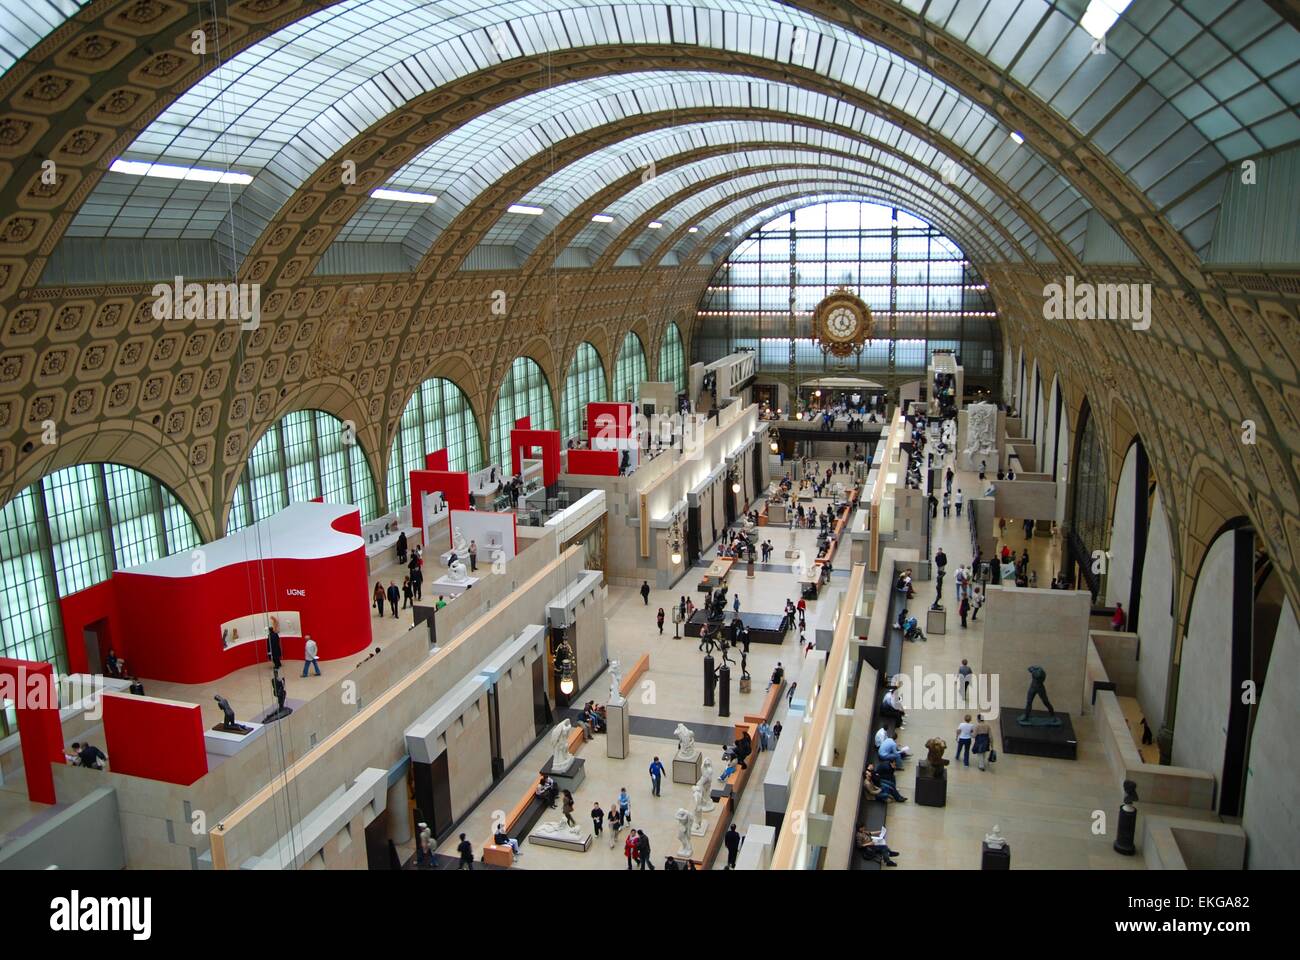 Musée d'Orsay, une ancienne gare ferroviaire, Paris, France, présentant des expositions et le toit voûté Banque D'Images